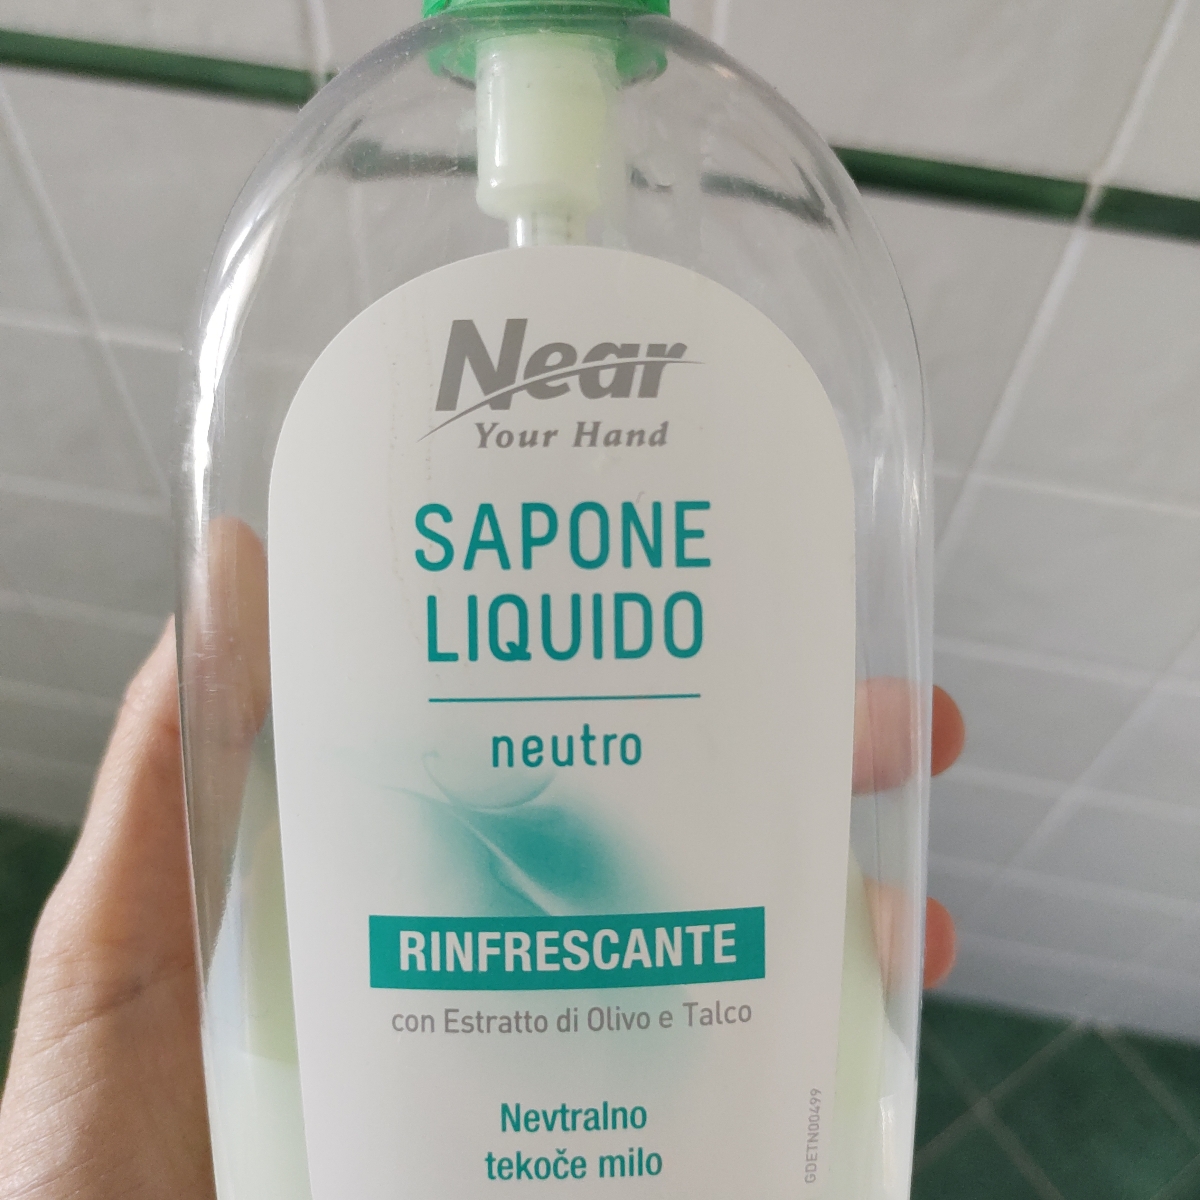 Near Sapone liquido rinfrescante Reviews | abillion